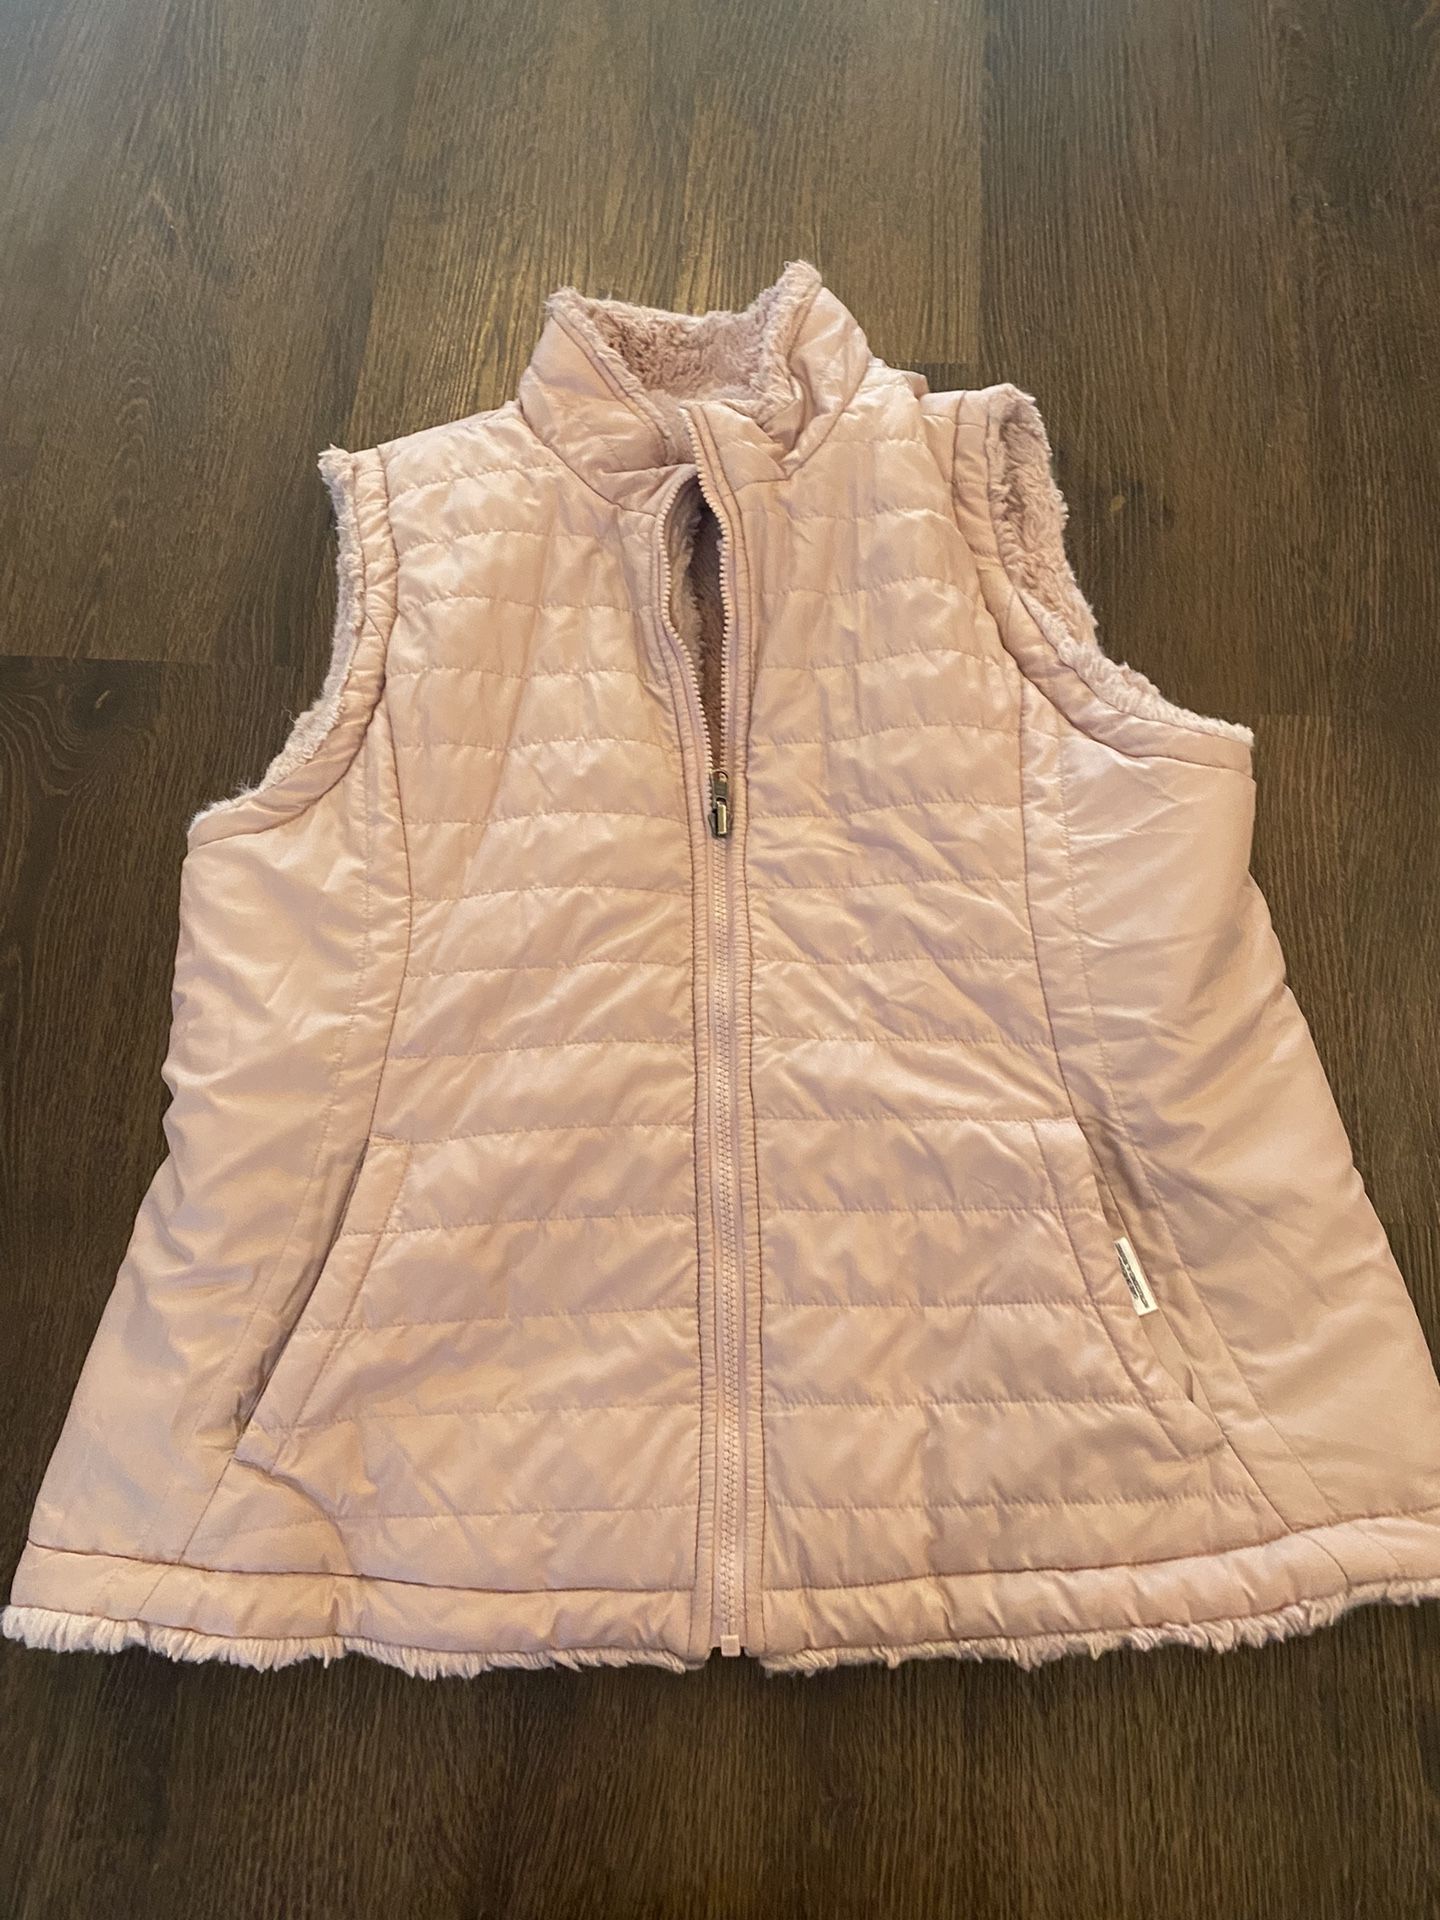 Womans Pink Reversible Fur Vest Size XL By Nicole Miller #15